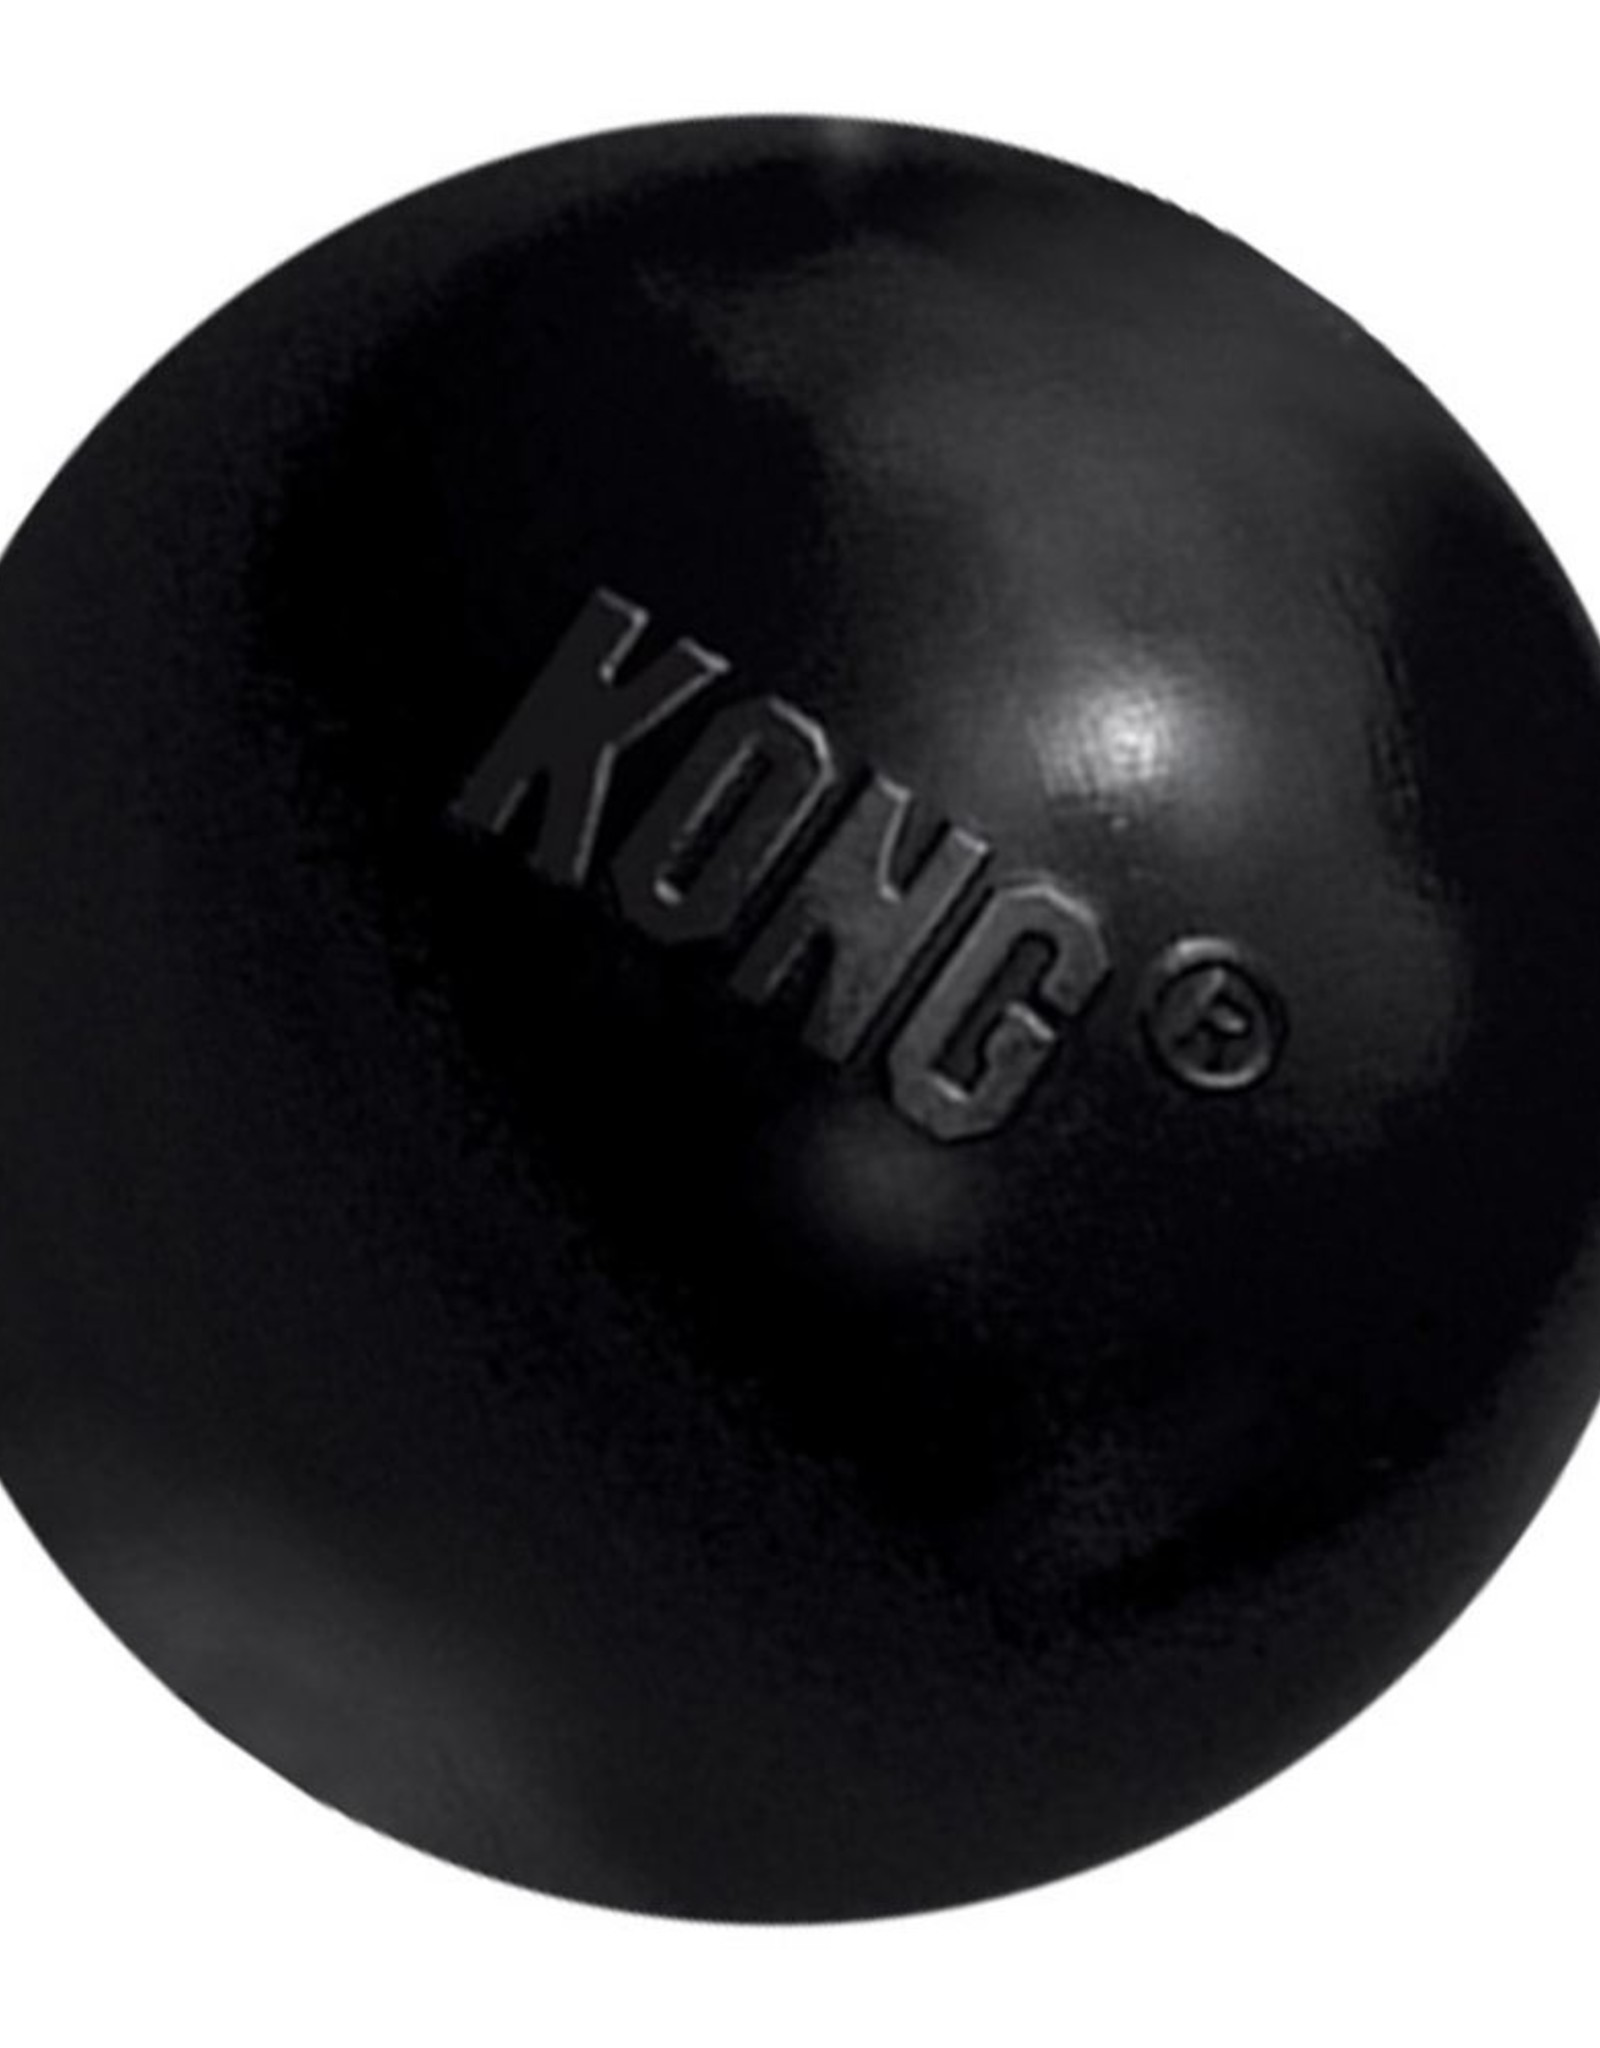 KONG COMPANY KONG EXTREME BALL MD/LG 24